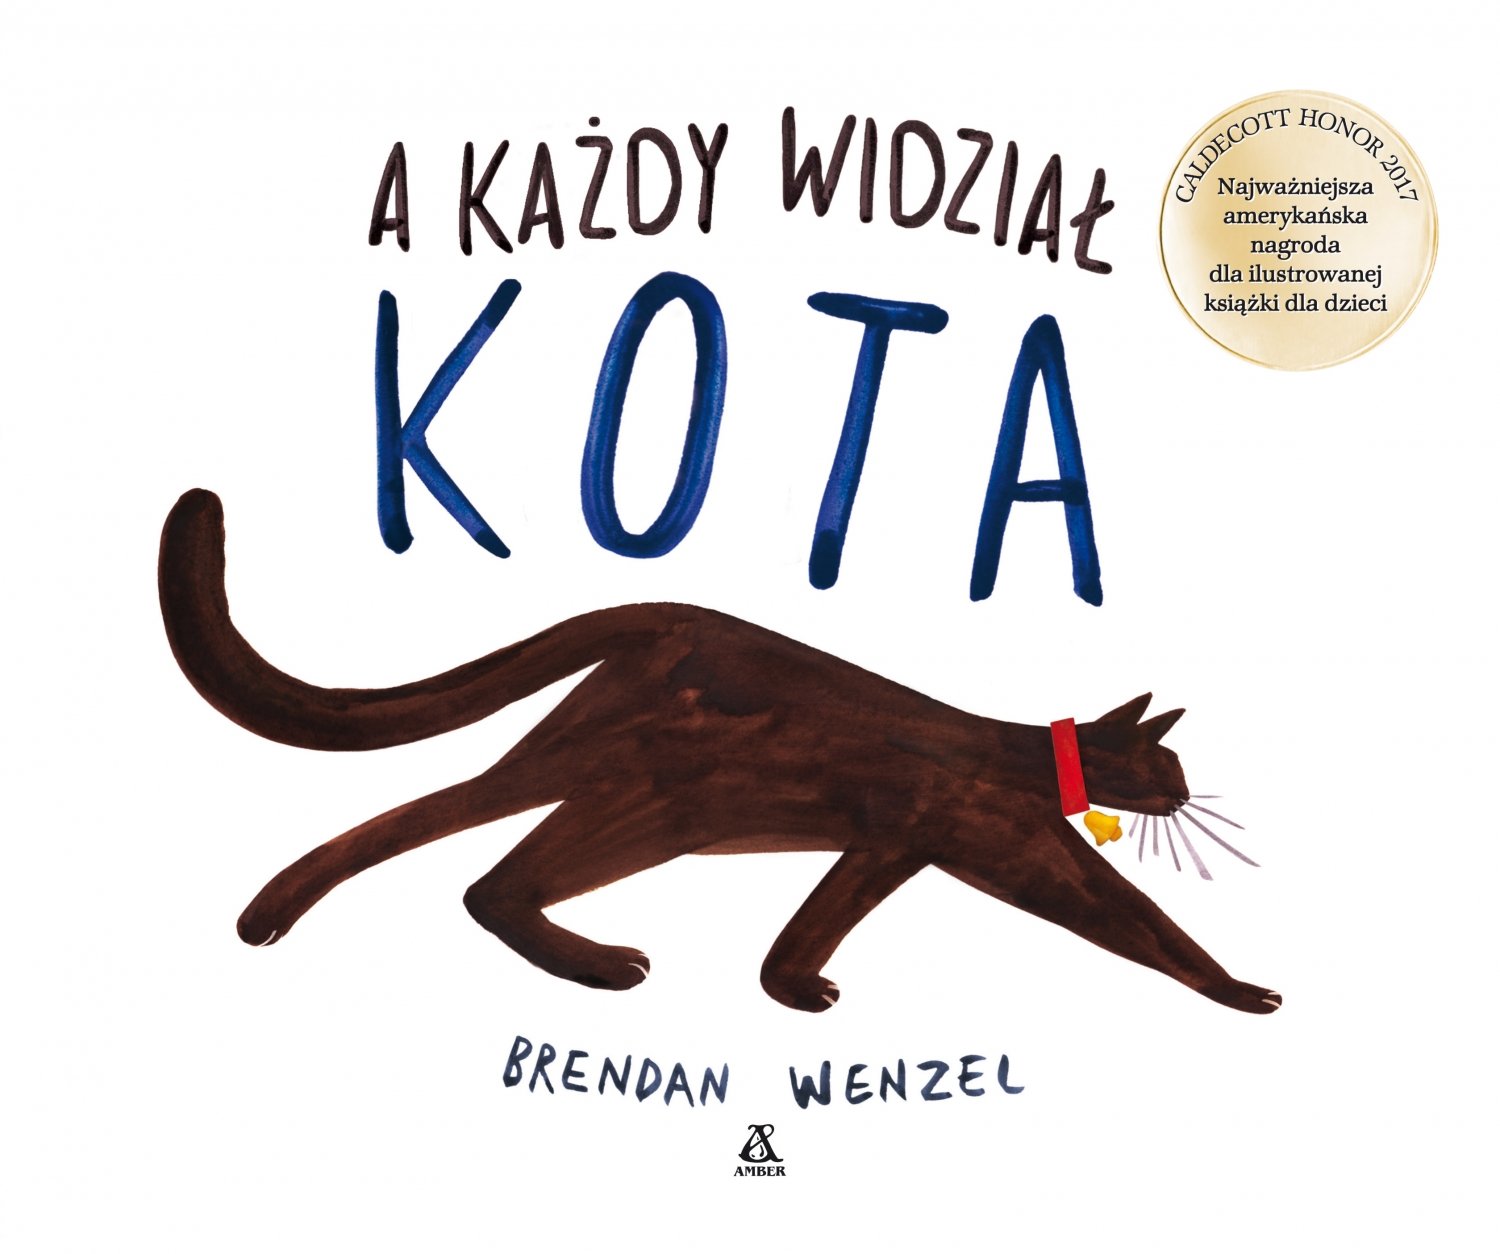 A każdy widział kota - unikatowa ilustrowana książka dla dzieci